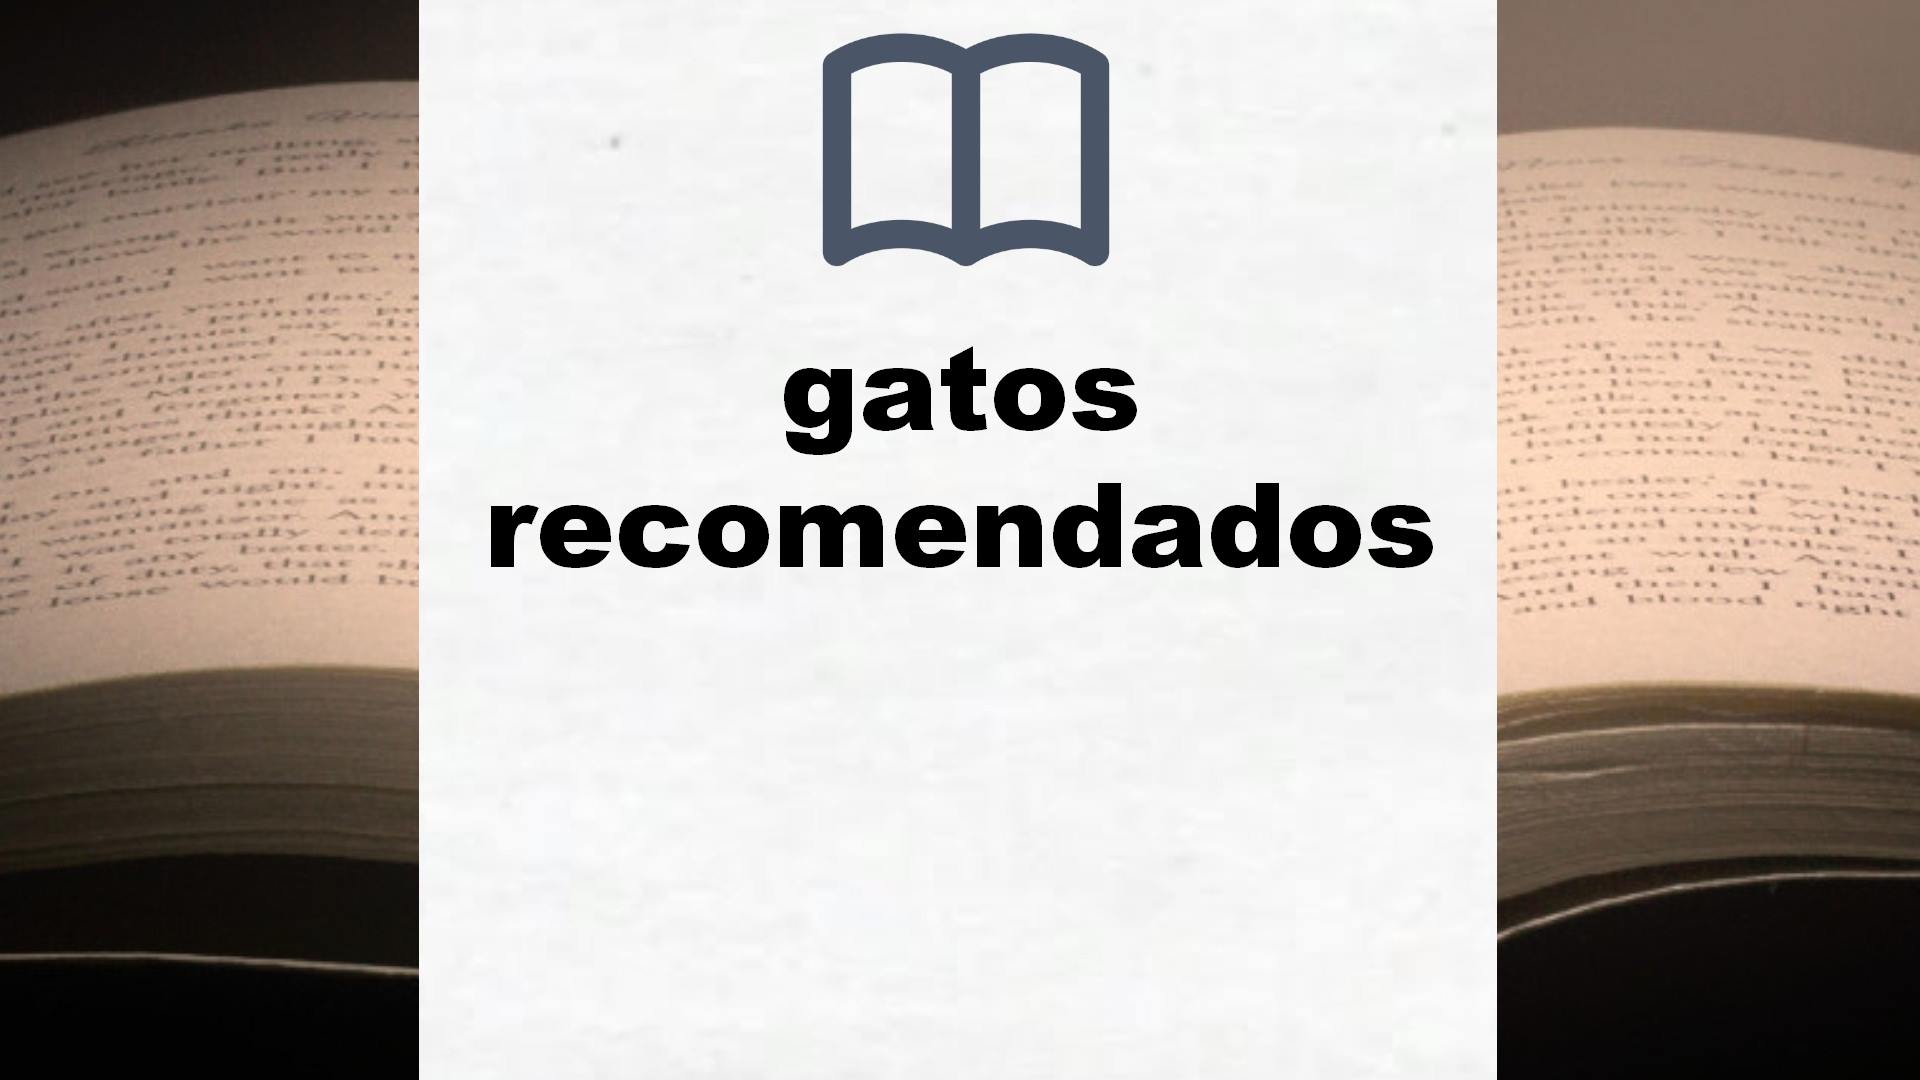 Libros sobre gatos recomendados